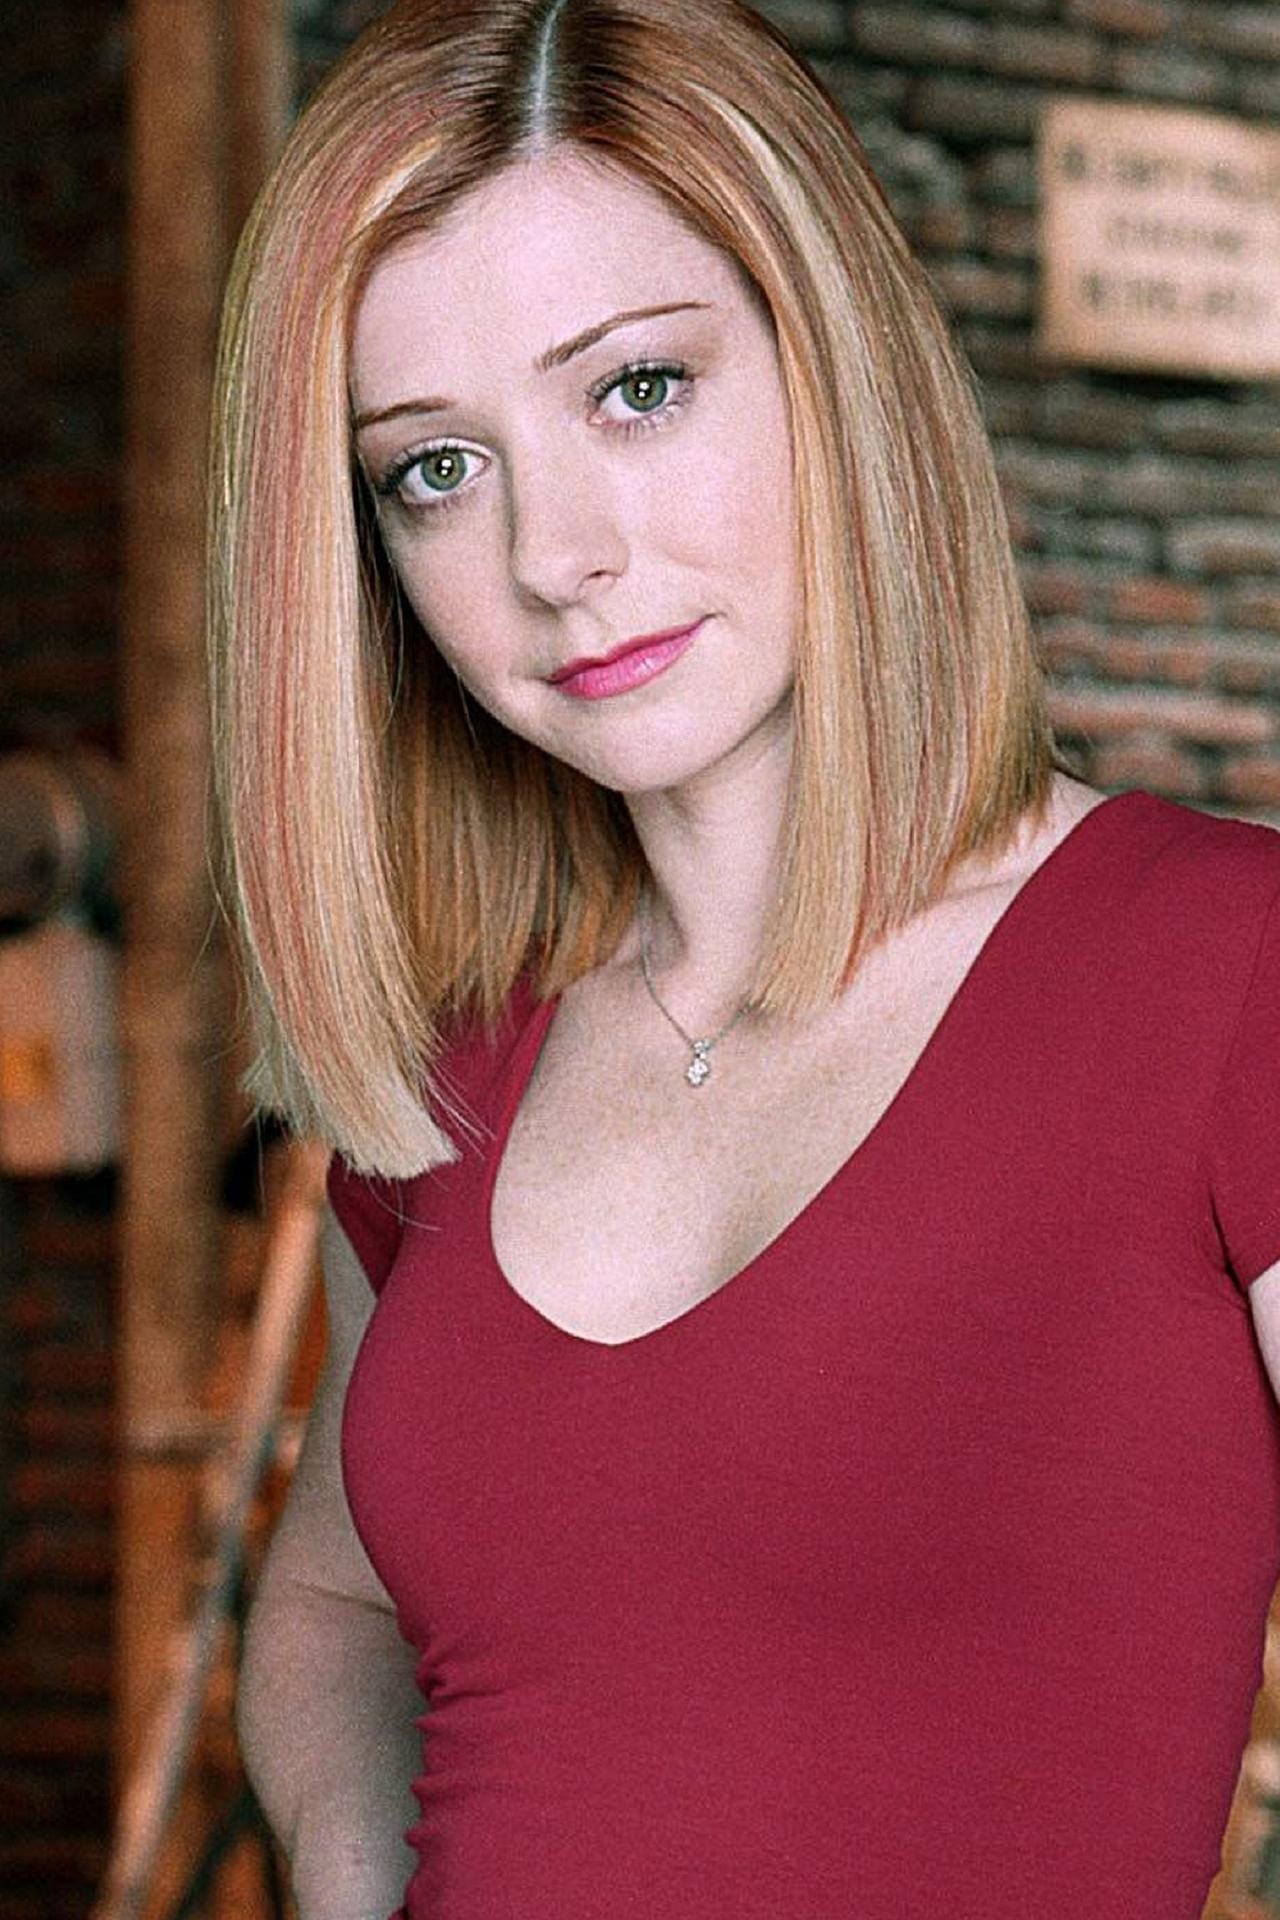 Alyson Hannigan übernahm die Rolle der Hexe Willow. Parallel spielte sie 1999 auch im Teenie-Kultfilm "American Pie" mit.